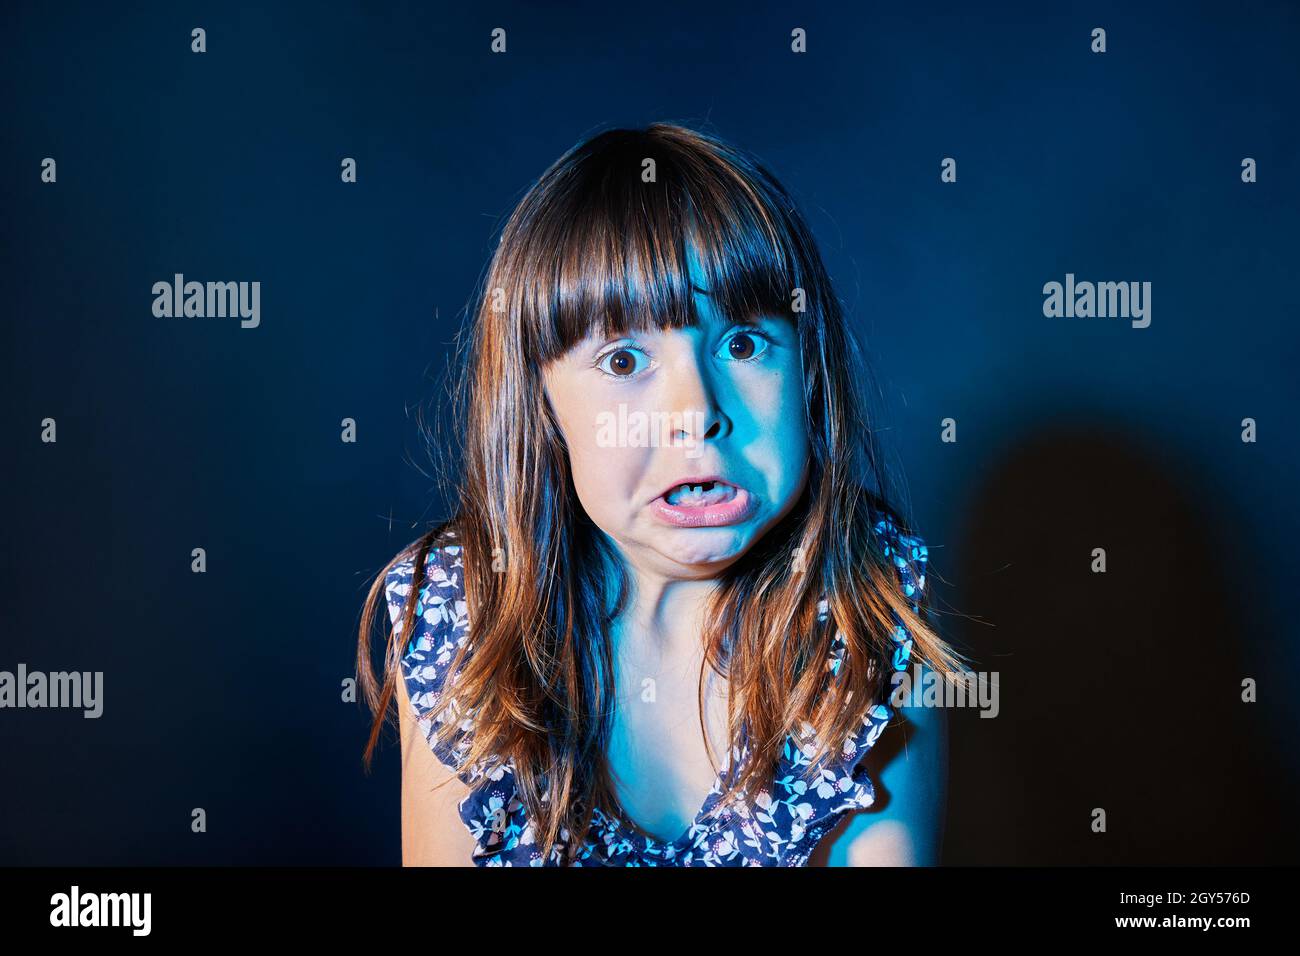 portrait d'une fille effrayée dans un environnement sombre avec des lumières colorées Banque D'Images